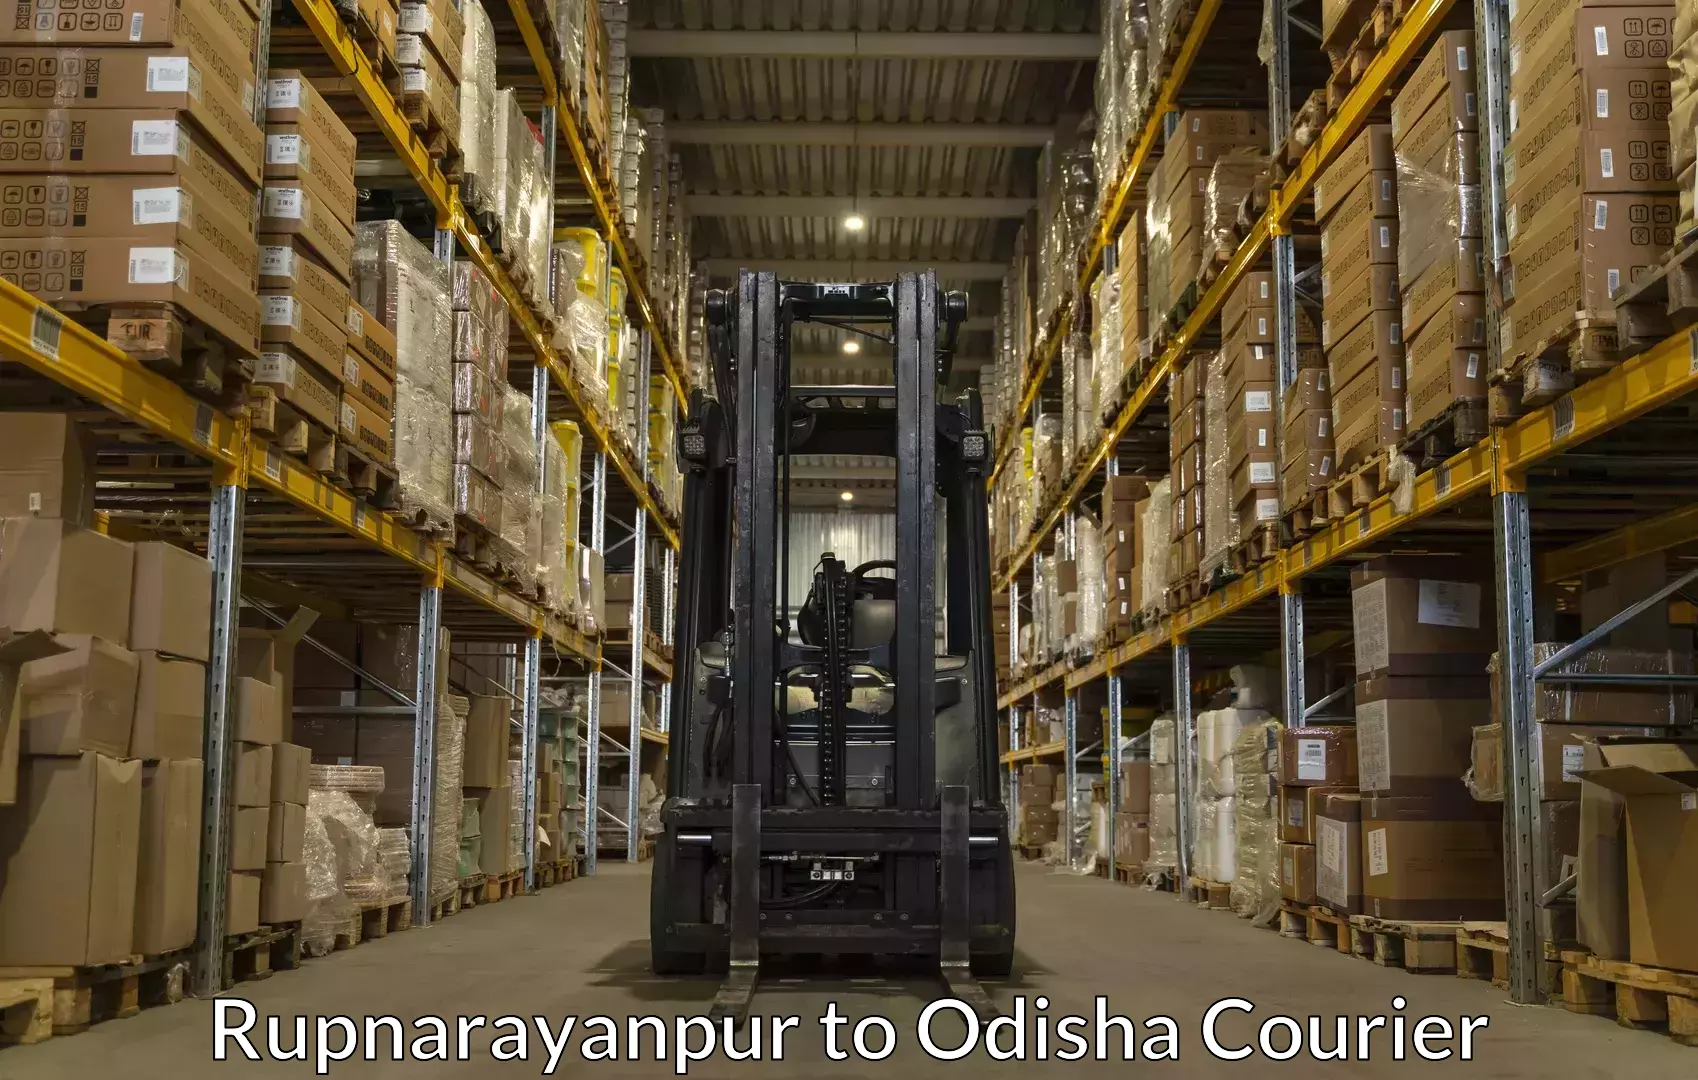 Baggage shipping experience in Rupnarayanpur to Kotapad